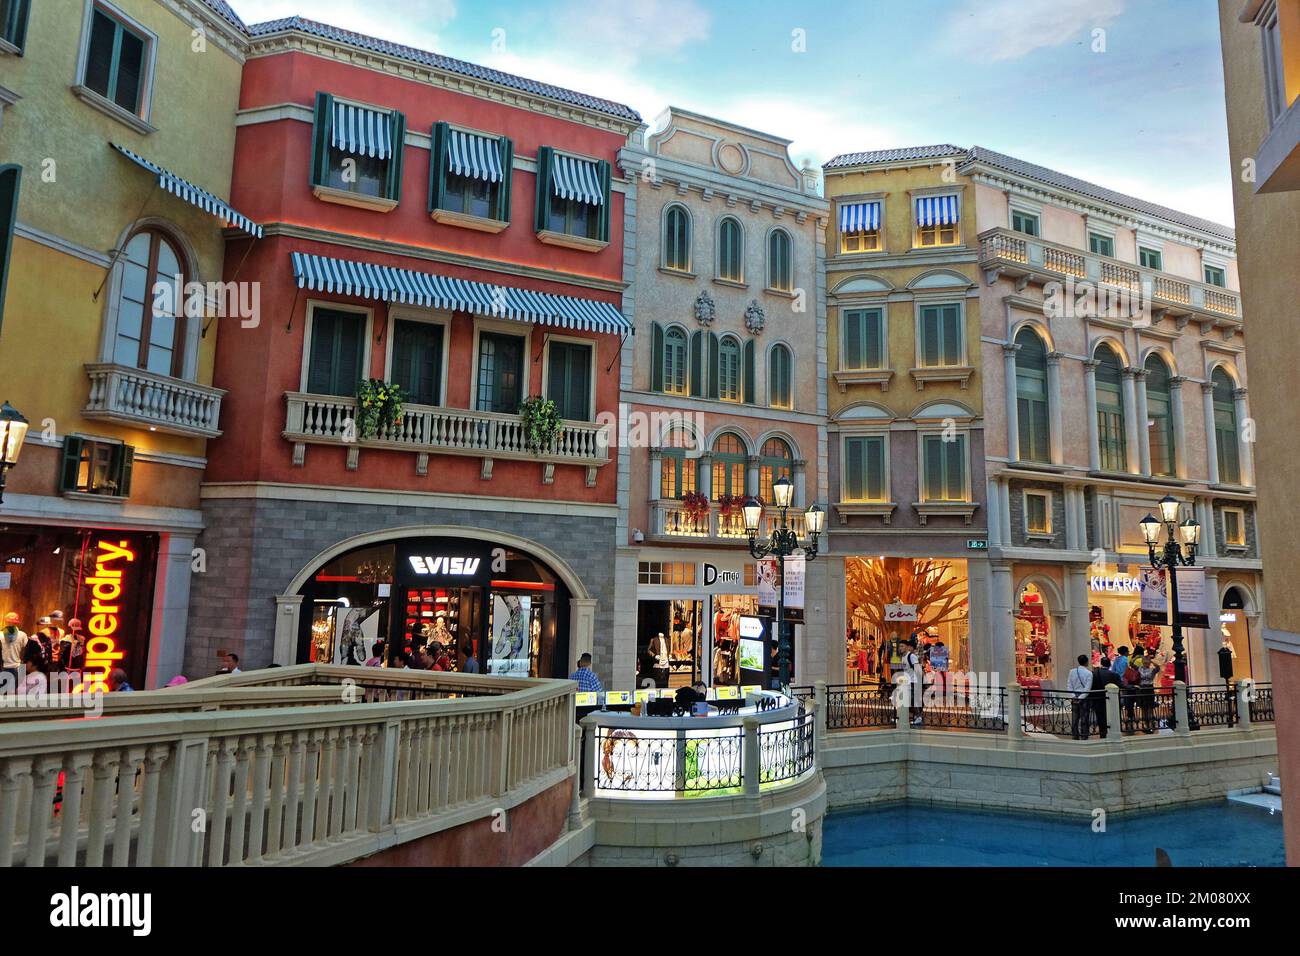 L'architecture et la décoration extérieures du Venetian dans le style gothique italien avec une façade de magasin et un grand canal - Cotai, Macao Banque D'Images